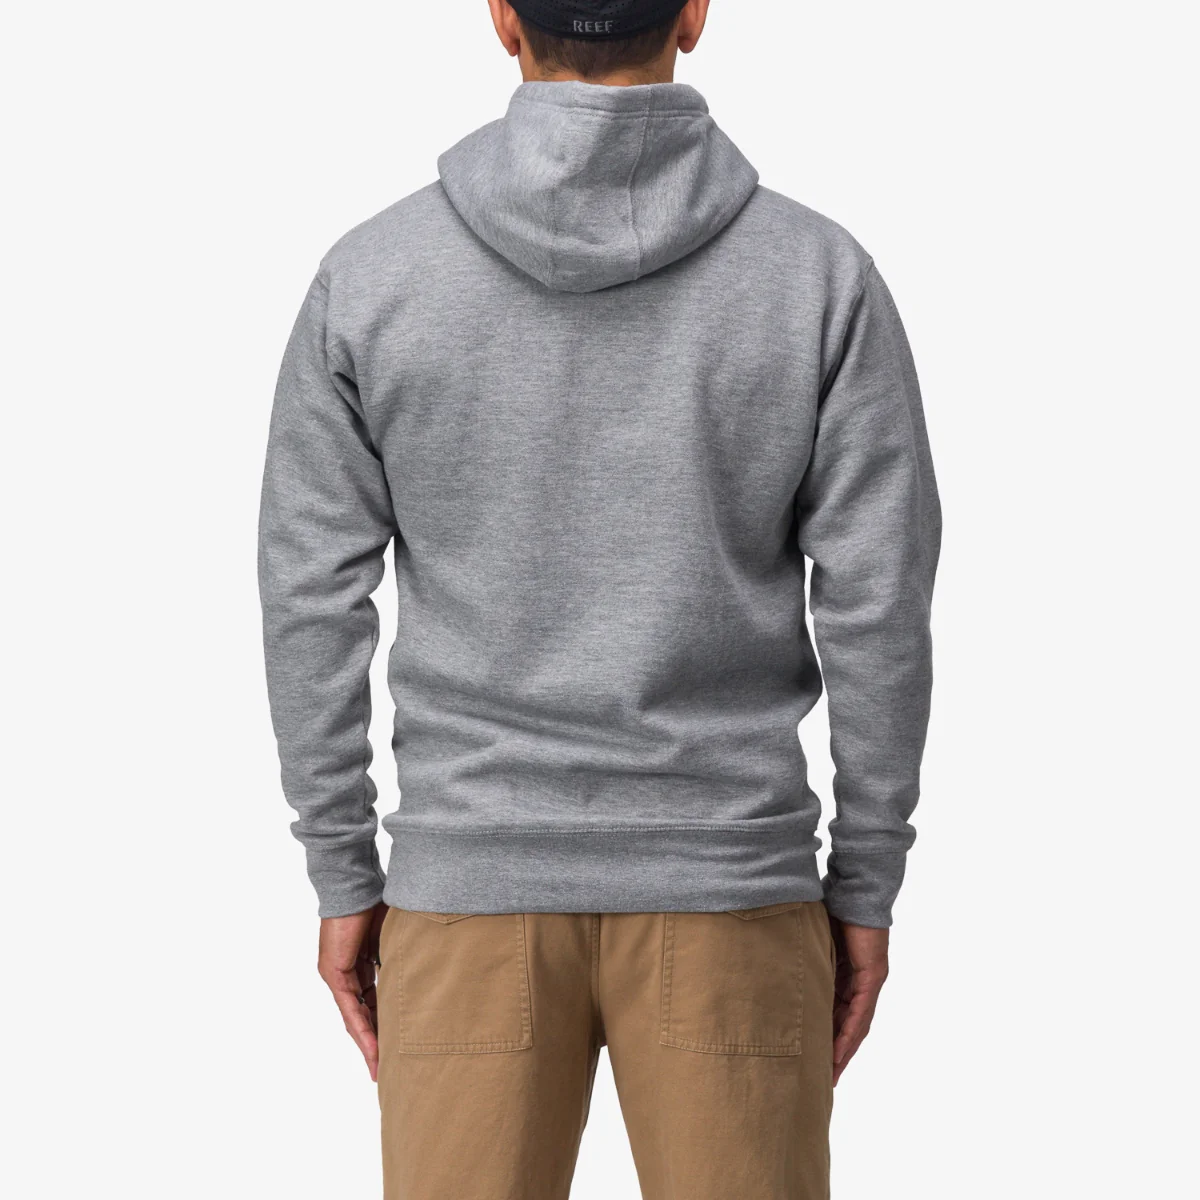 reef Encinitas California grey sweatshirt